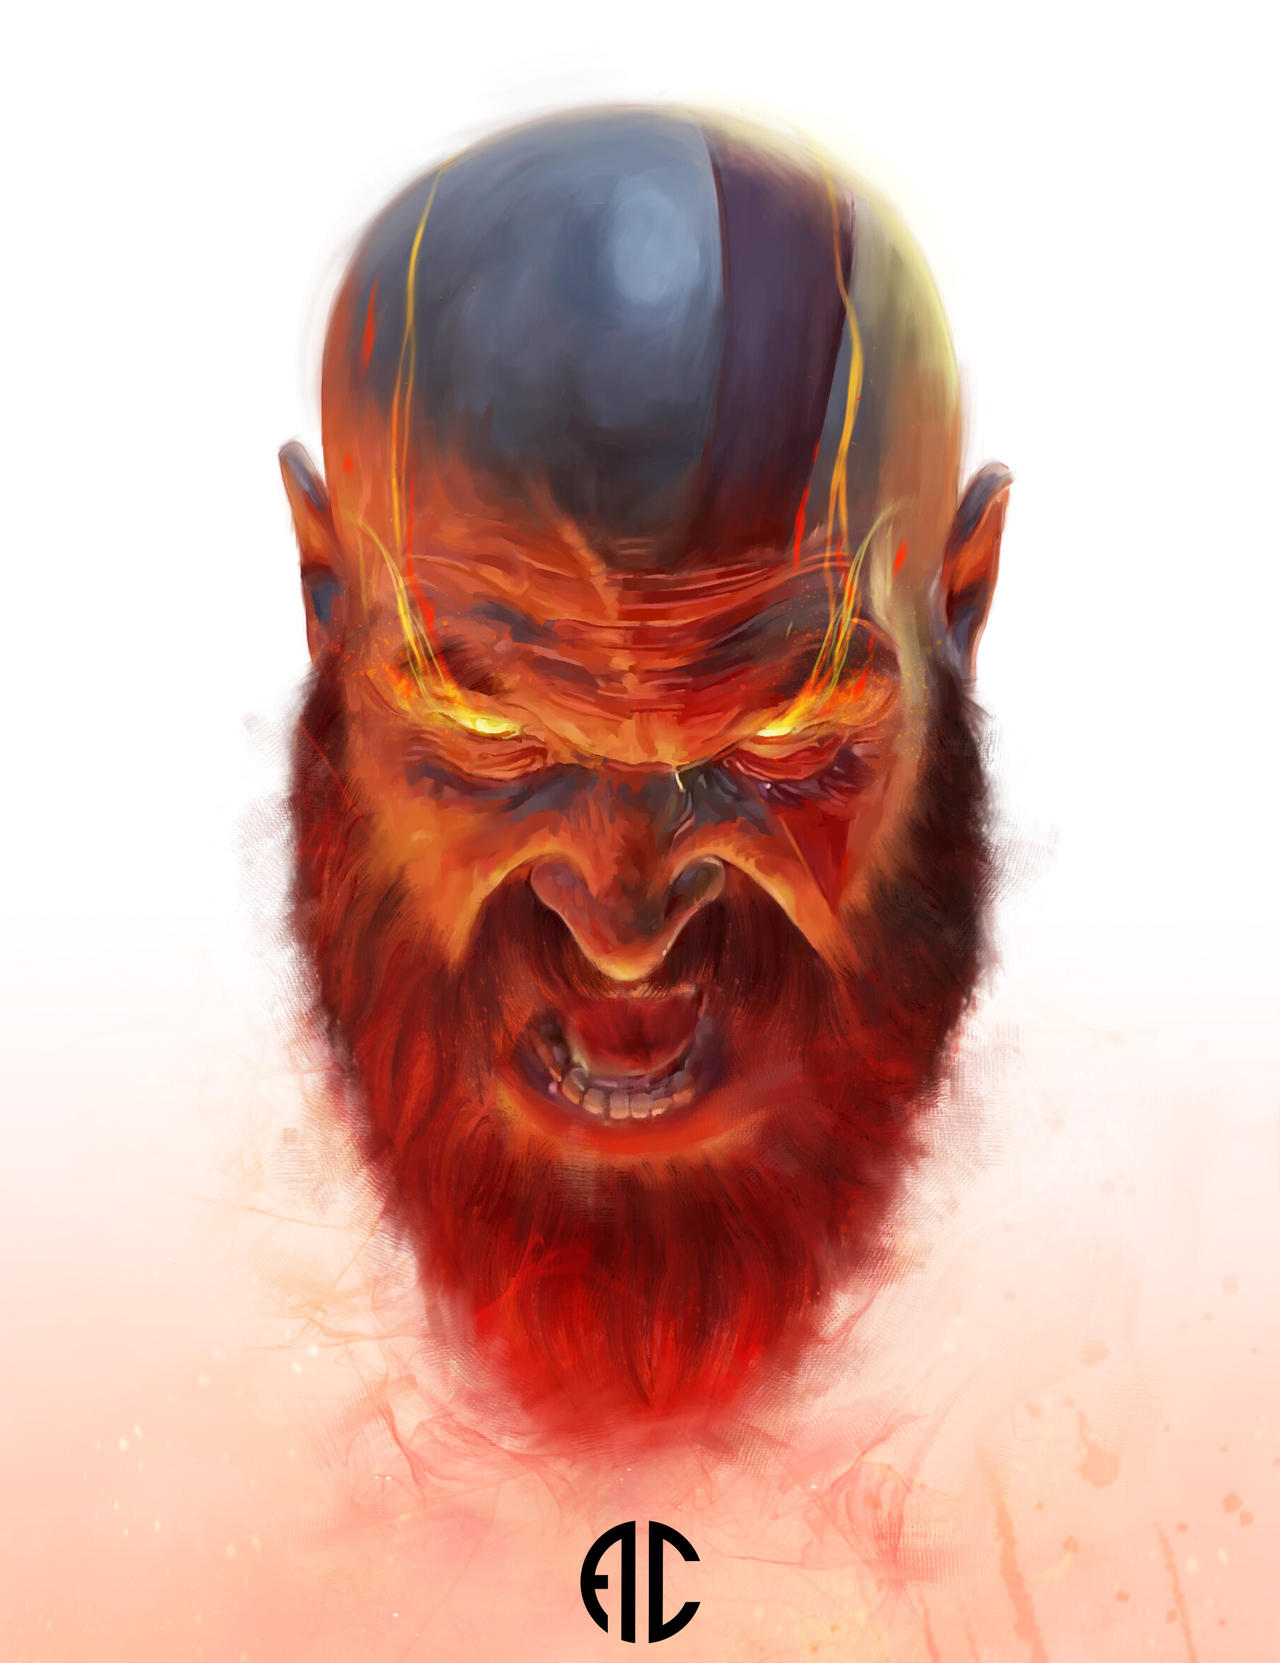 Kratos, Spartan Rage by Raivis-Draka on DeviantArt